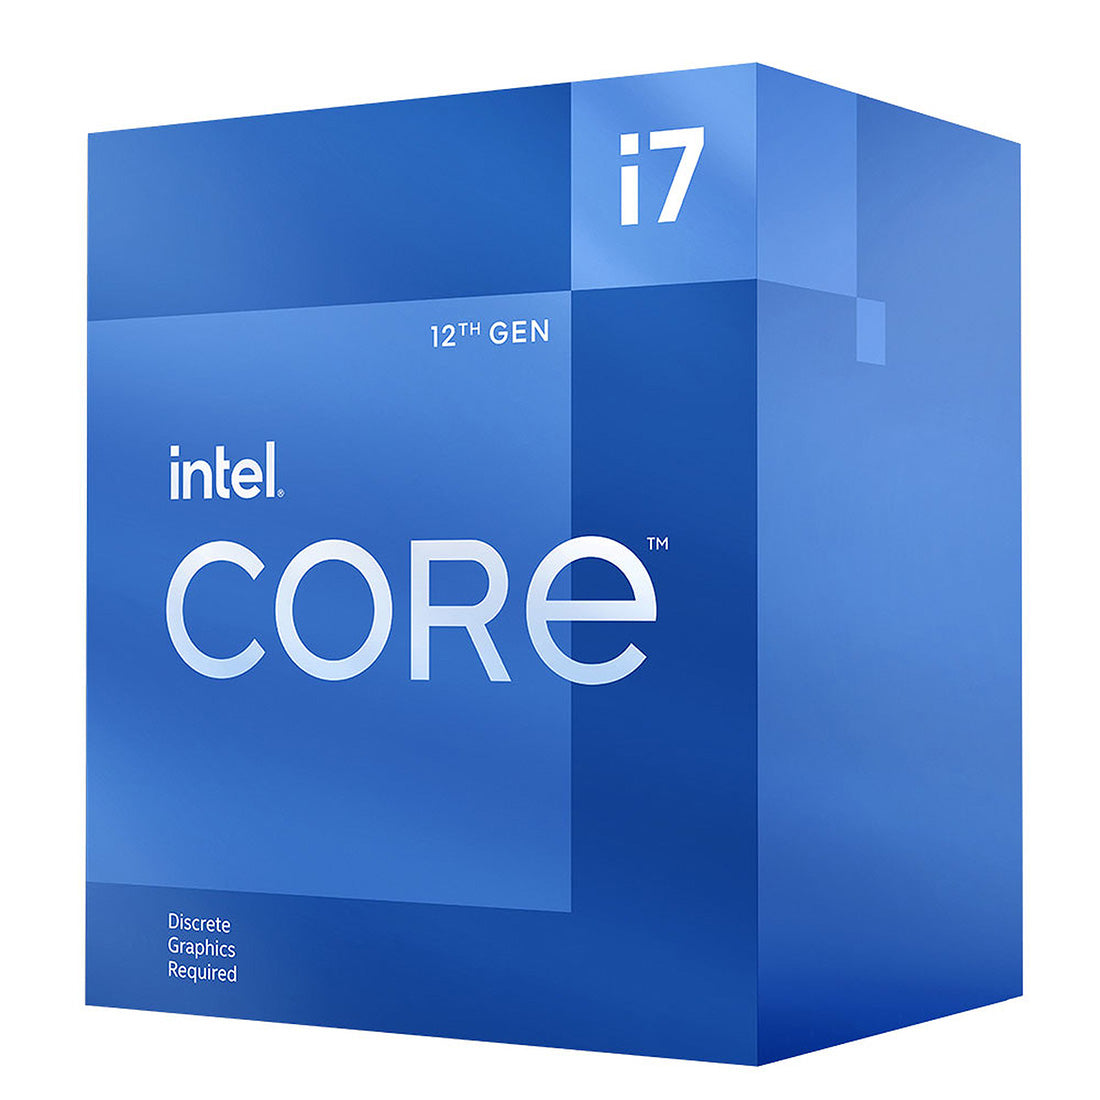 Intel Core 12th Gen i7-12700F LGA1700 Desktop Processor 12 Cores up to 4.9GHz 25MB Cache